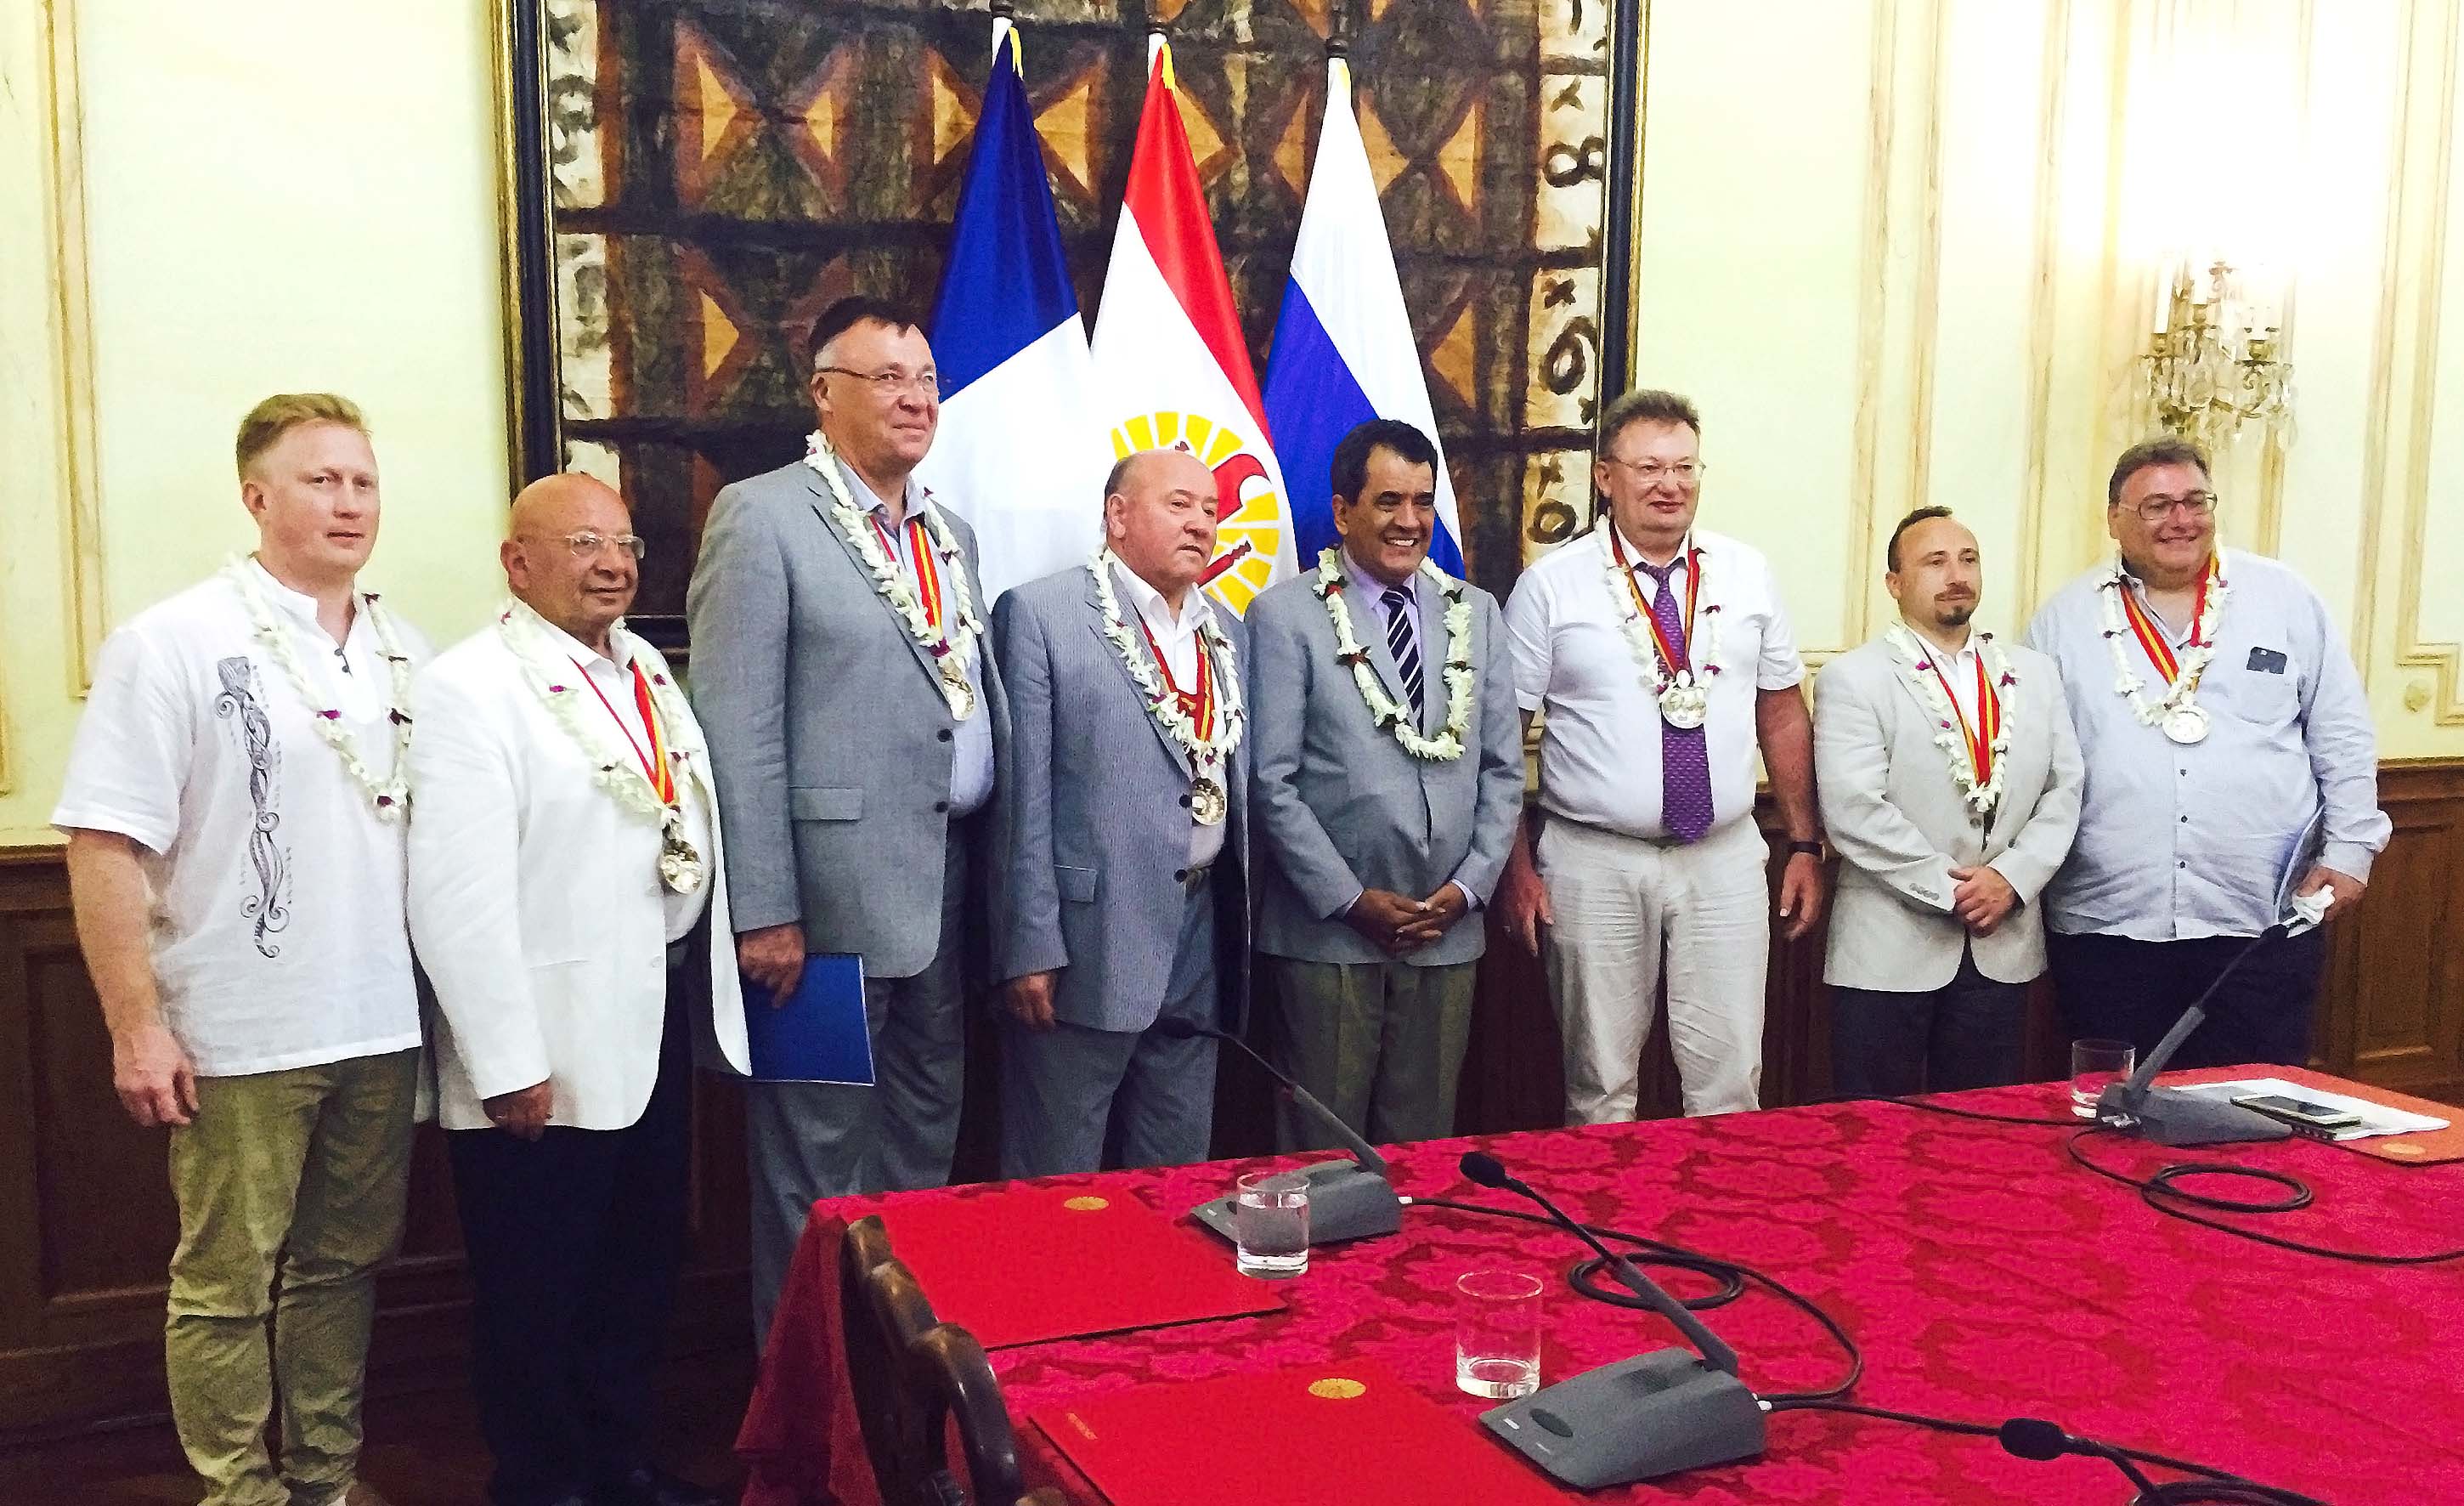 Des représentants de la ville de Saint-Pétersbourg sont en visite en Polynésie française.